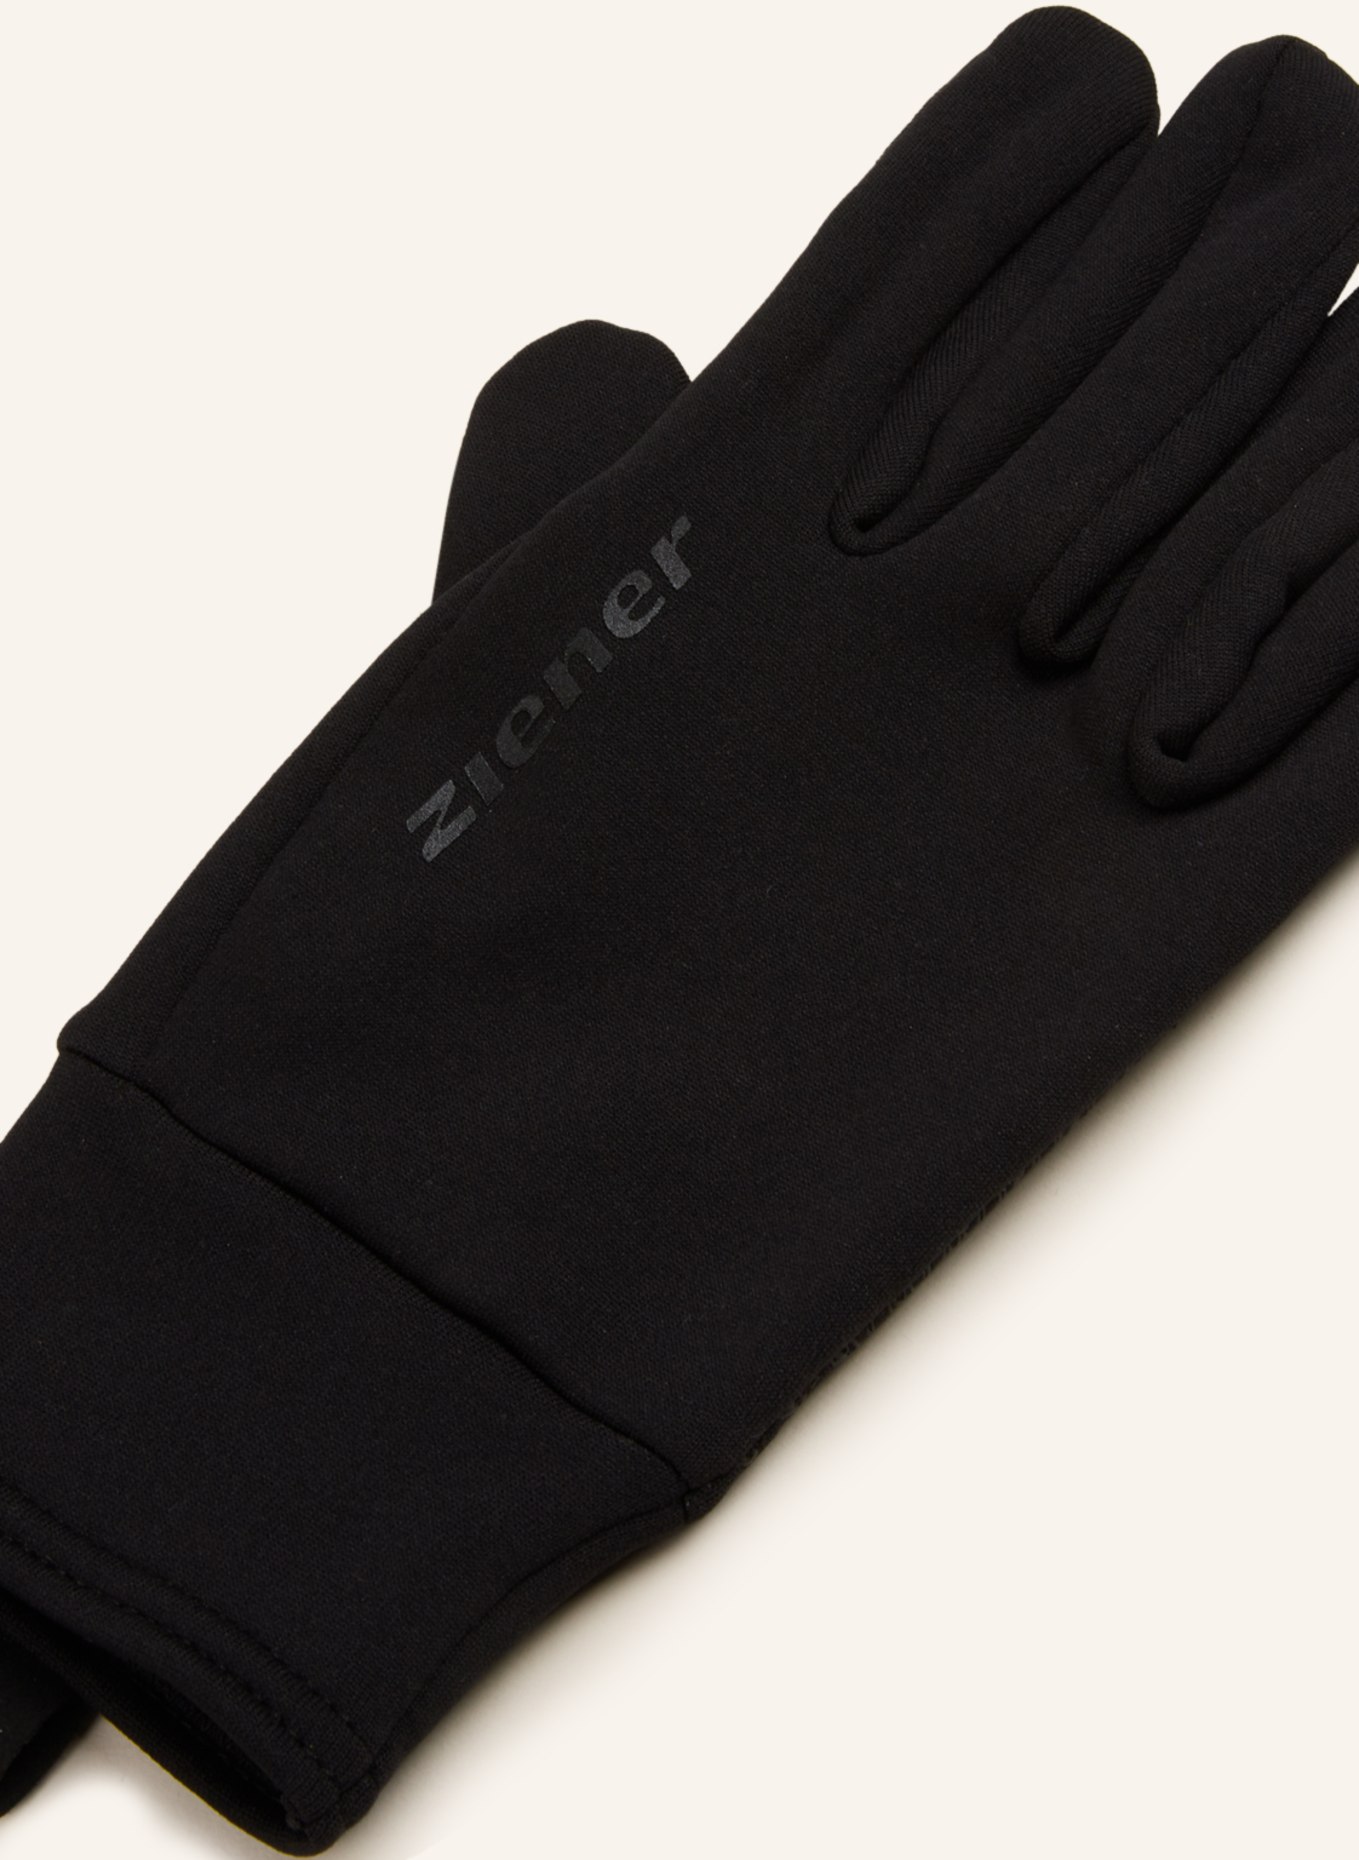 Multisport-Handschuhe TOUCH in schwarz ziener mit ISANTO Touchscreen-Funktion